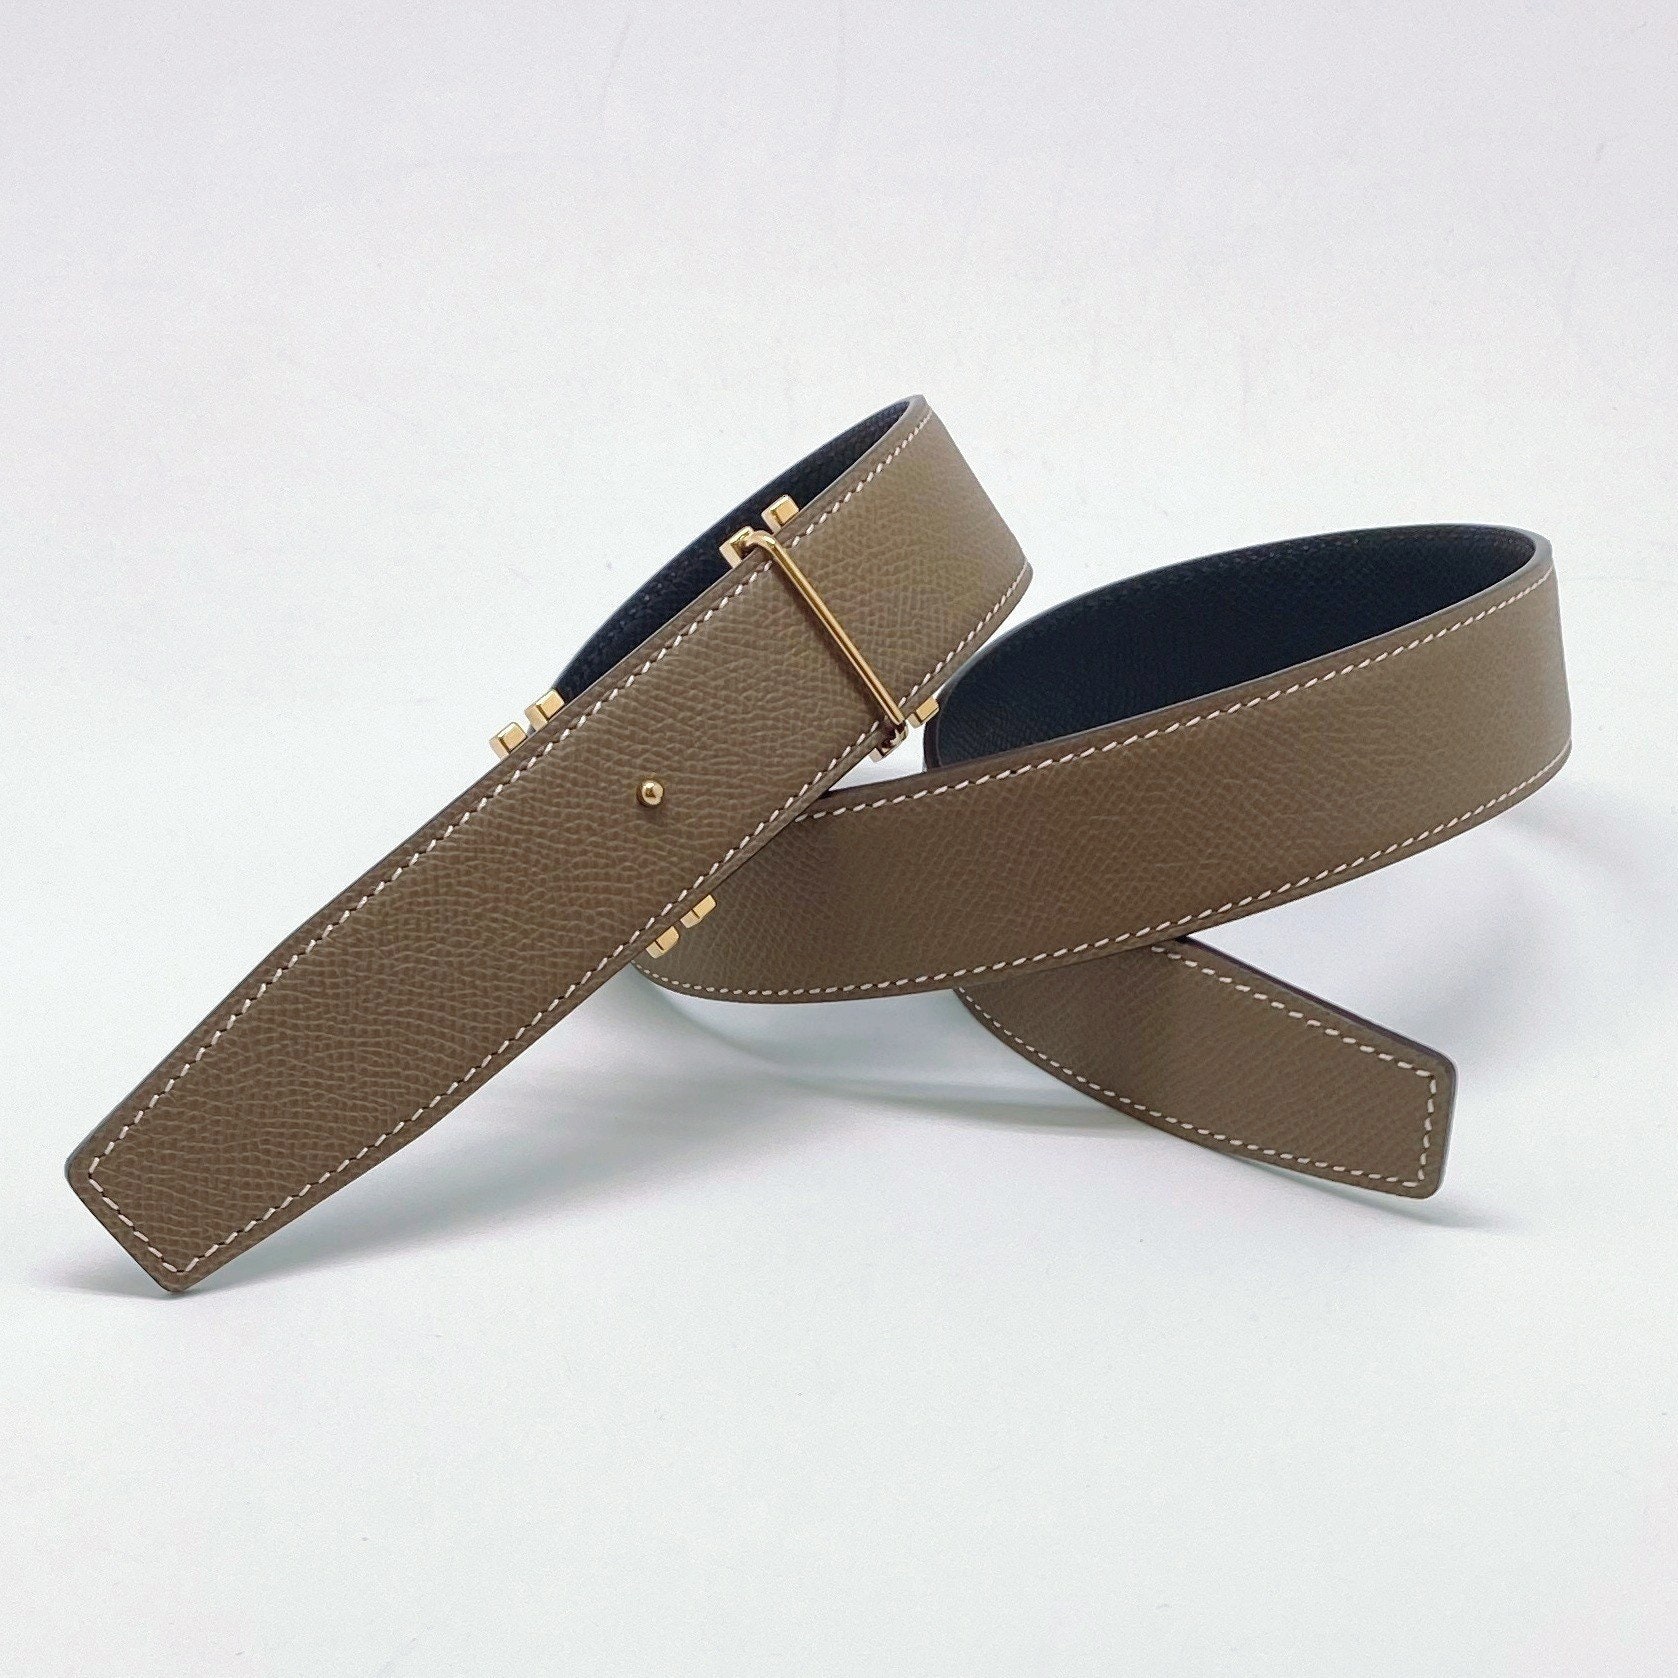 H Martelee belt buckle & Leather strap 32 mm